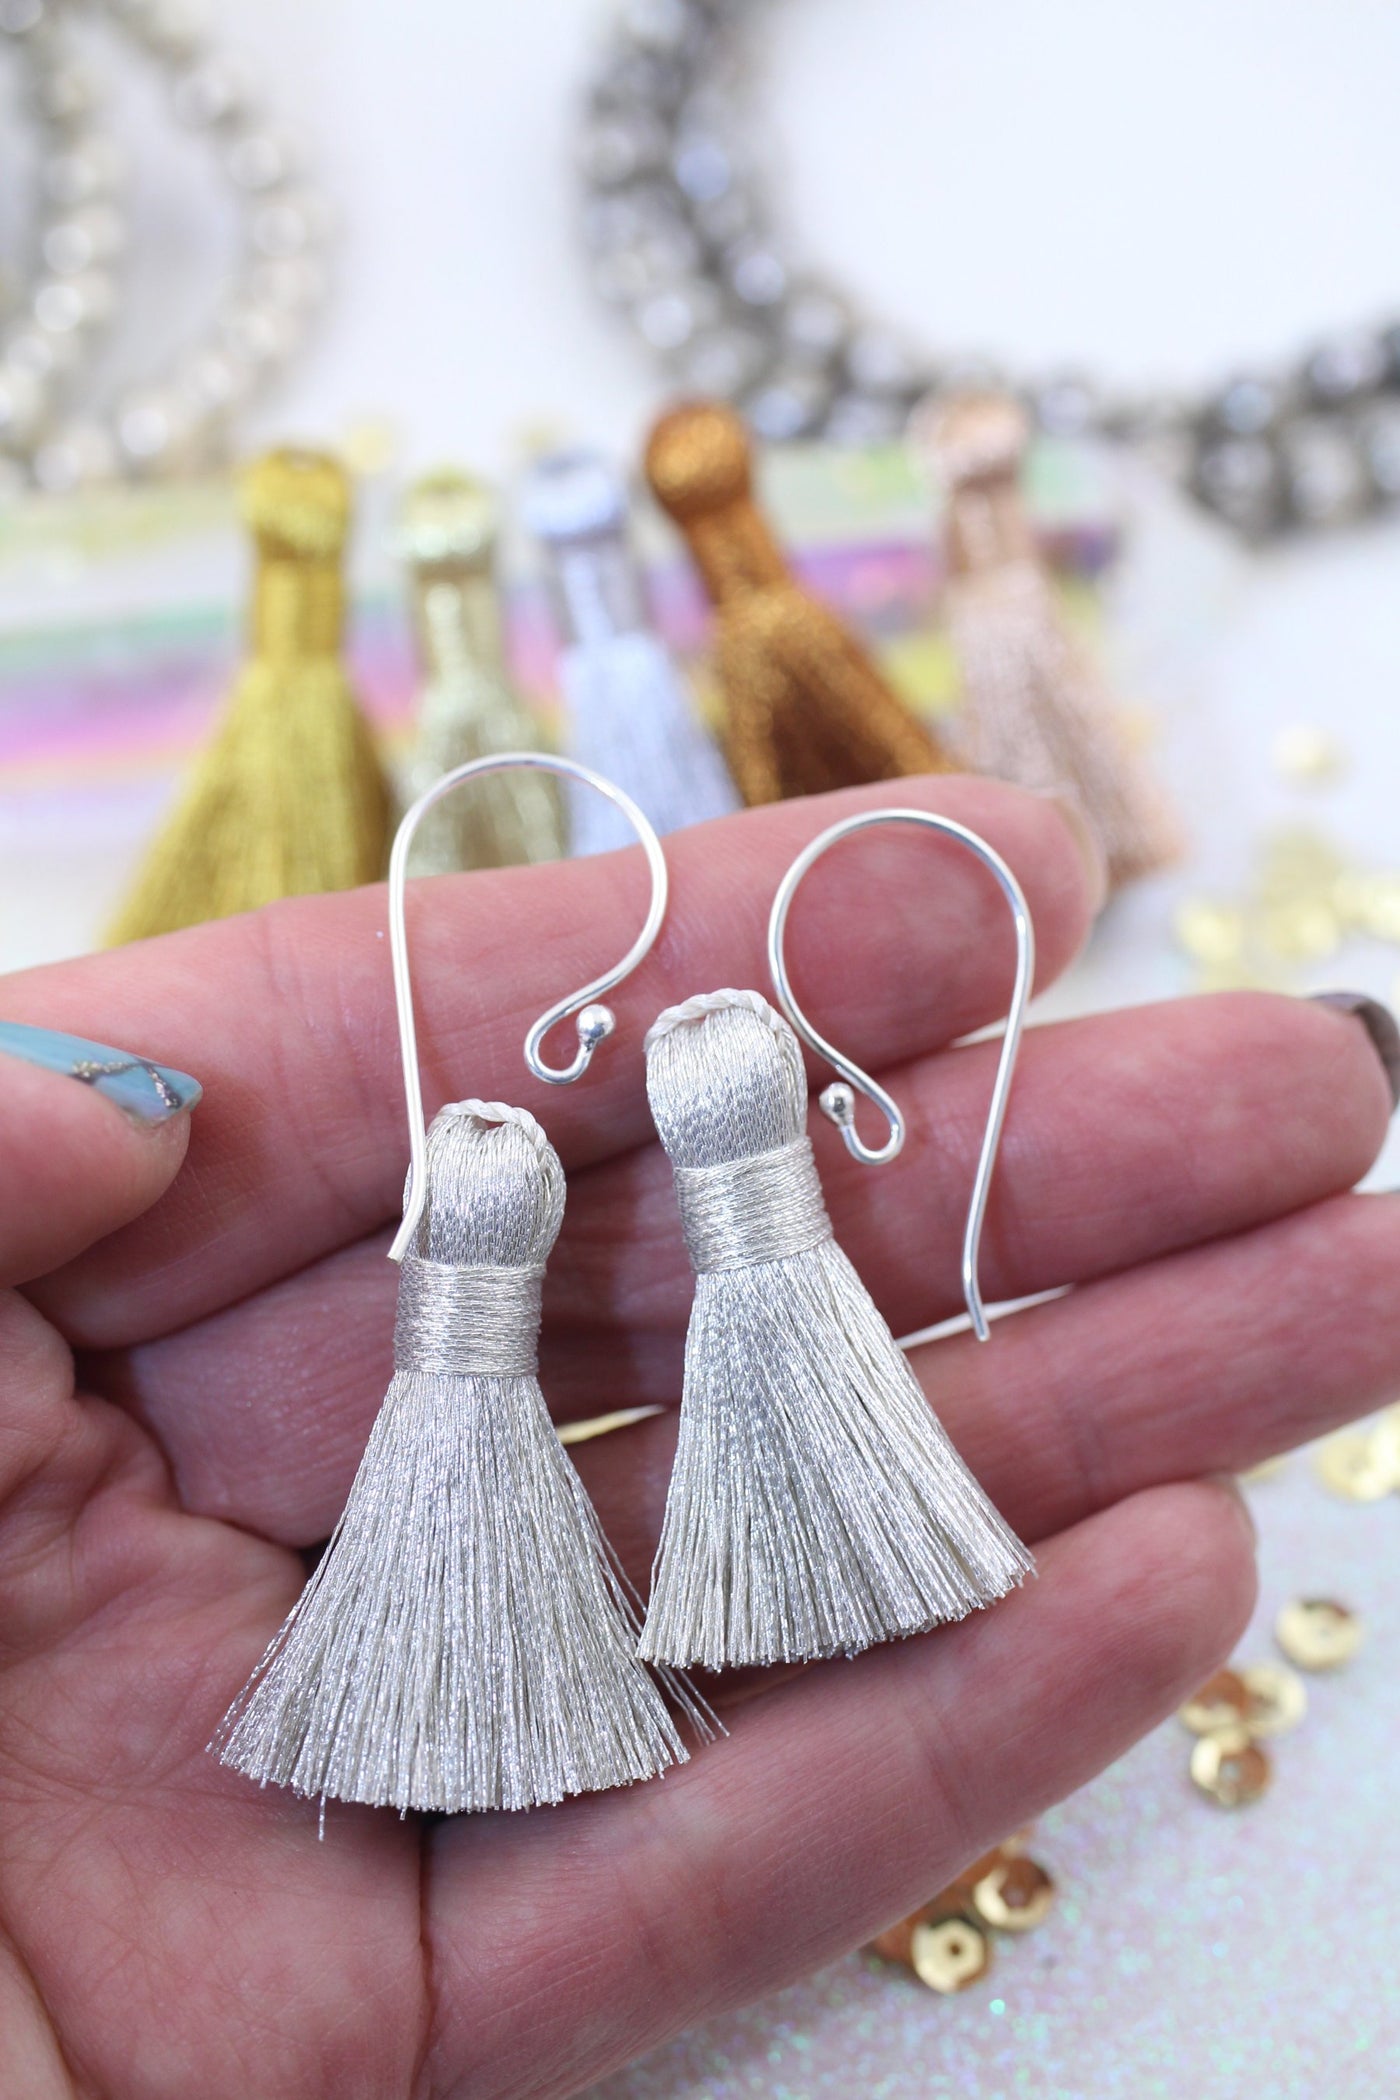 Metallic Tassels: 1.25 Handmade Tassels for Making Earrings/Jewelry